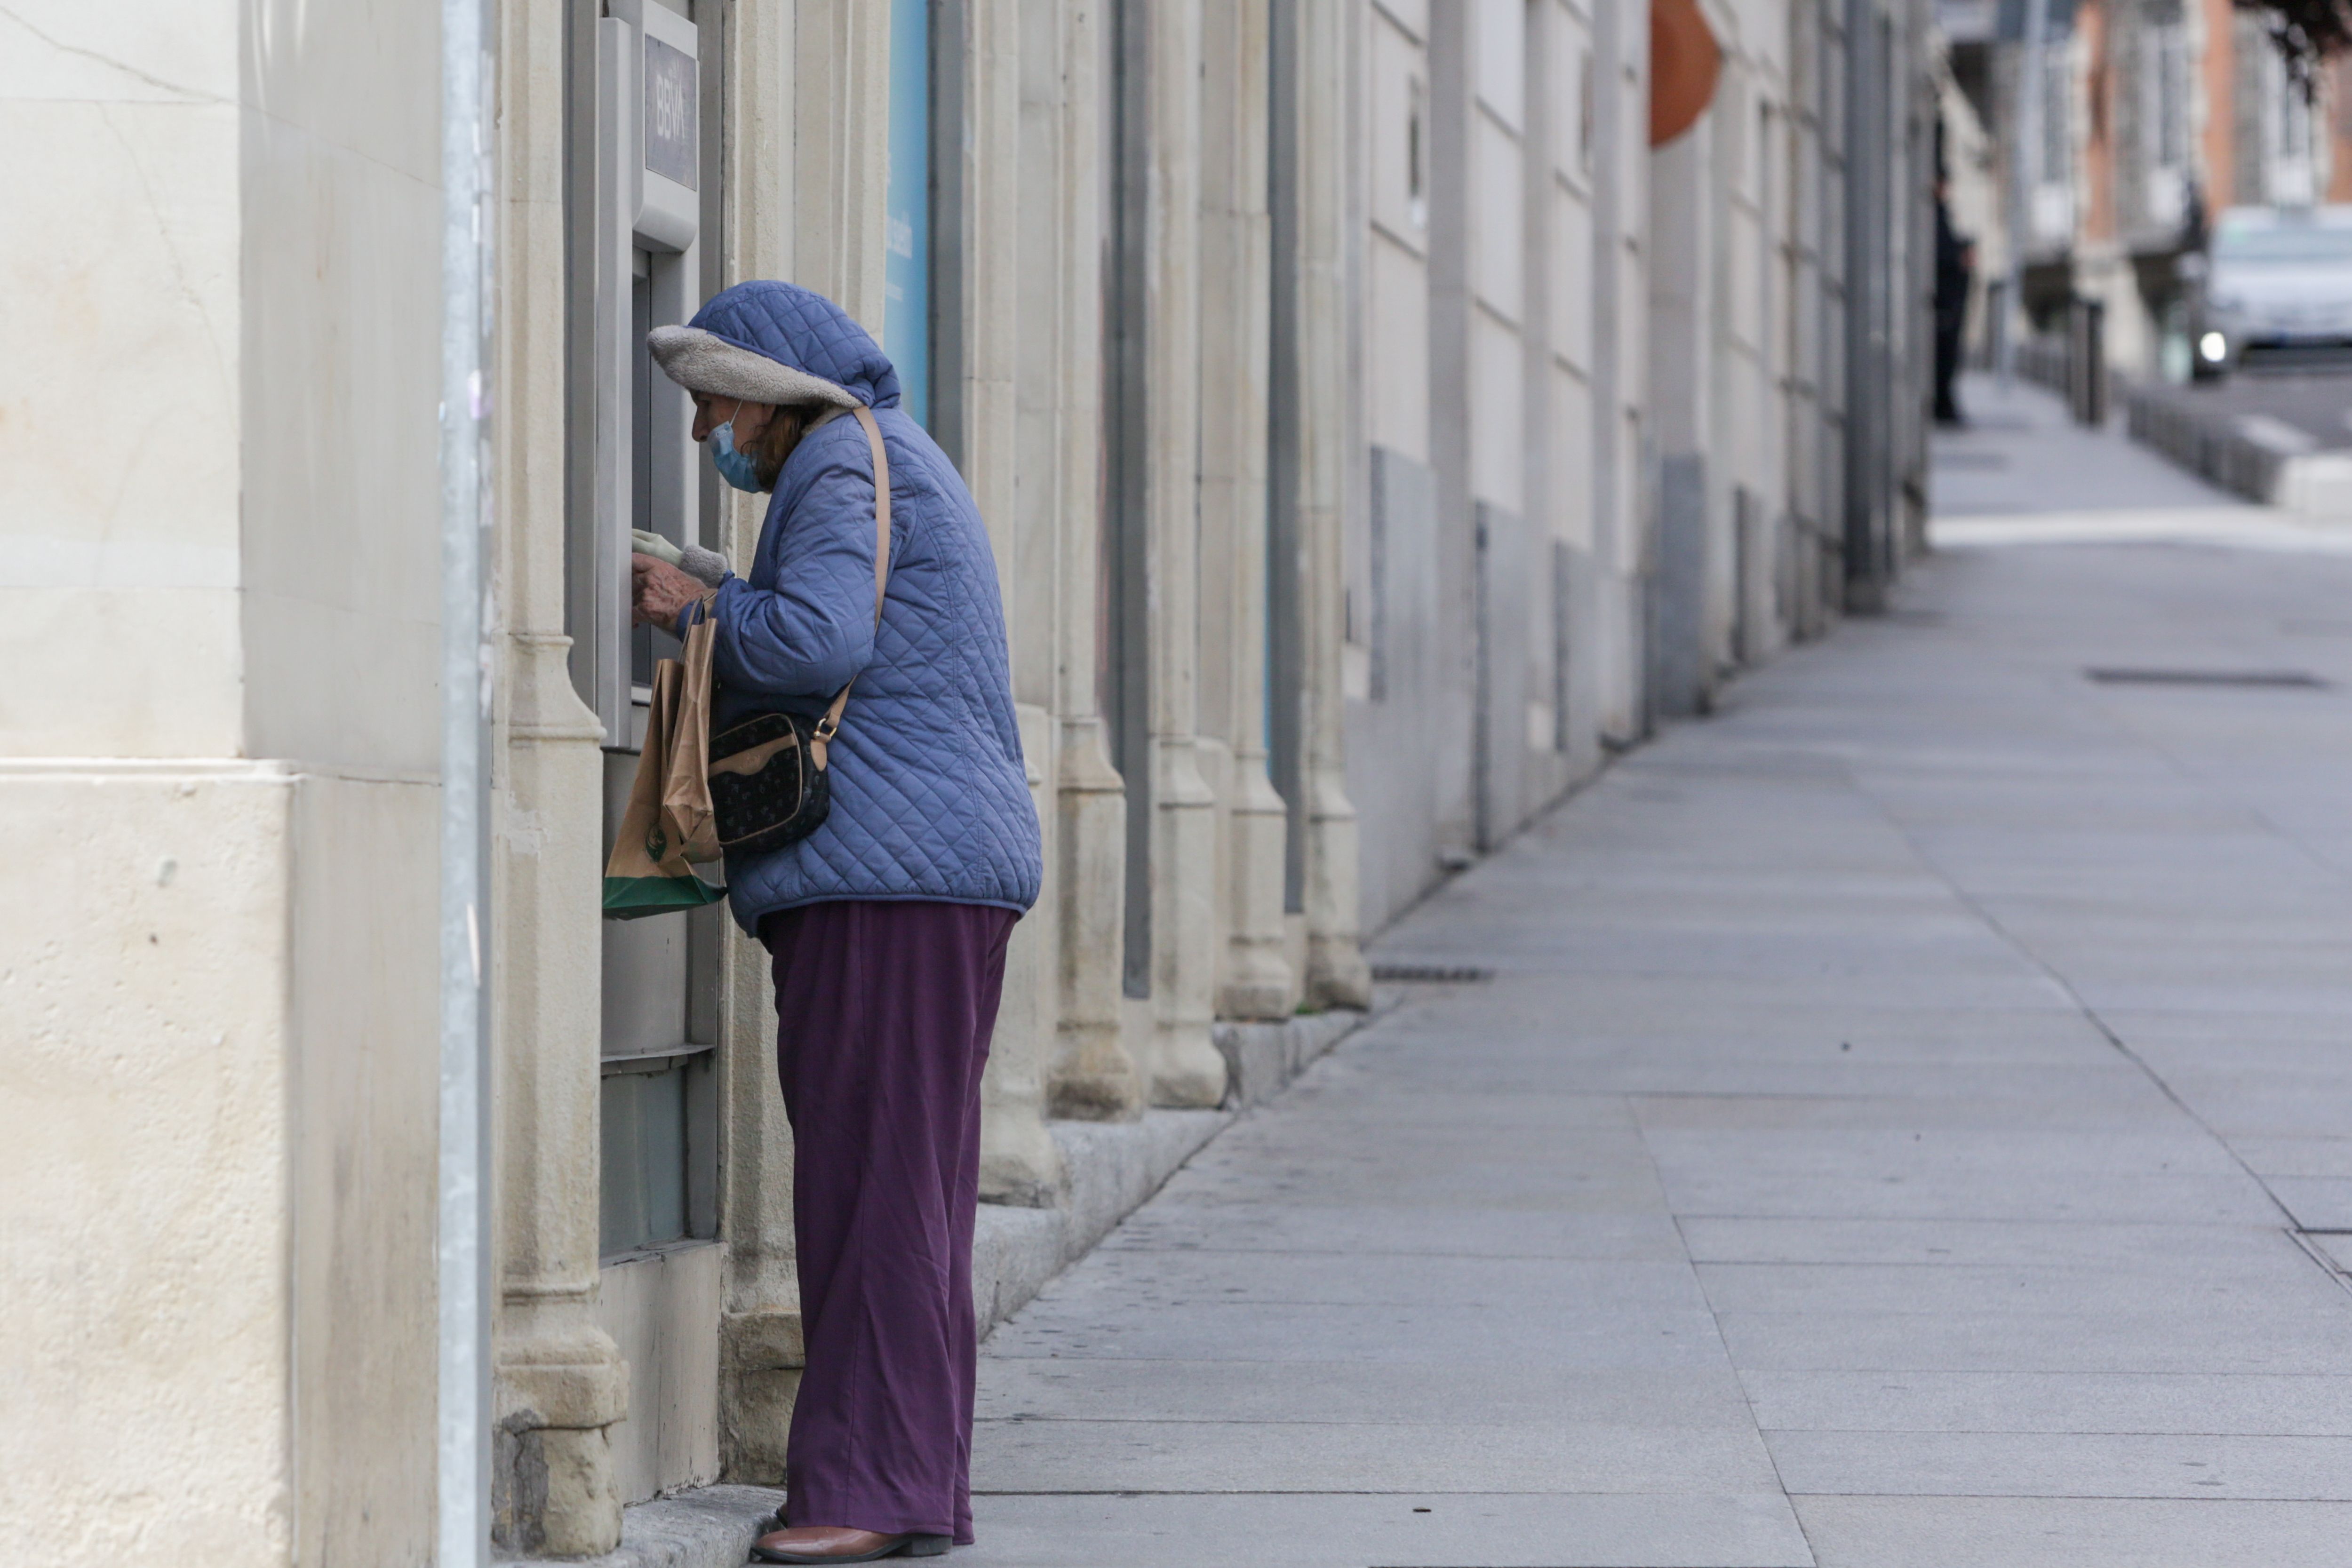 "La exclusión financiera tiene unas graves consecuencias sobre las personas mayores"